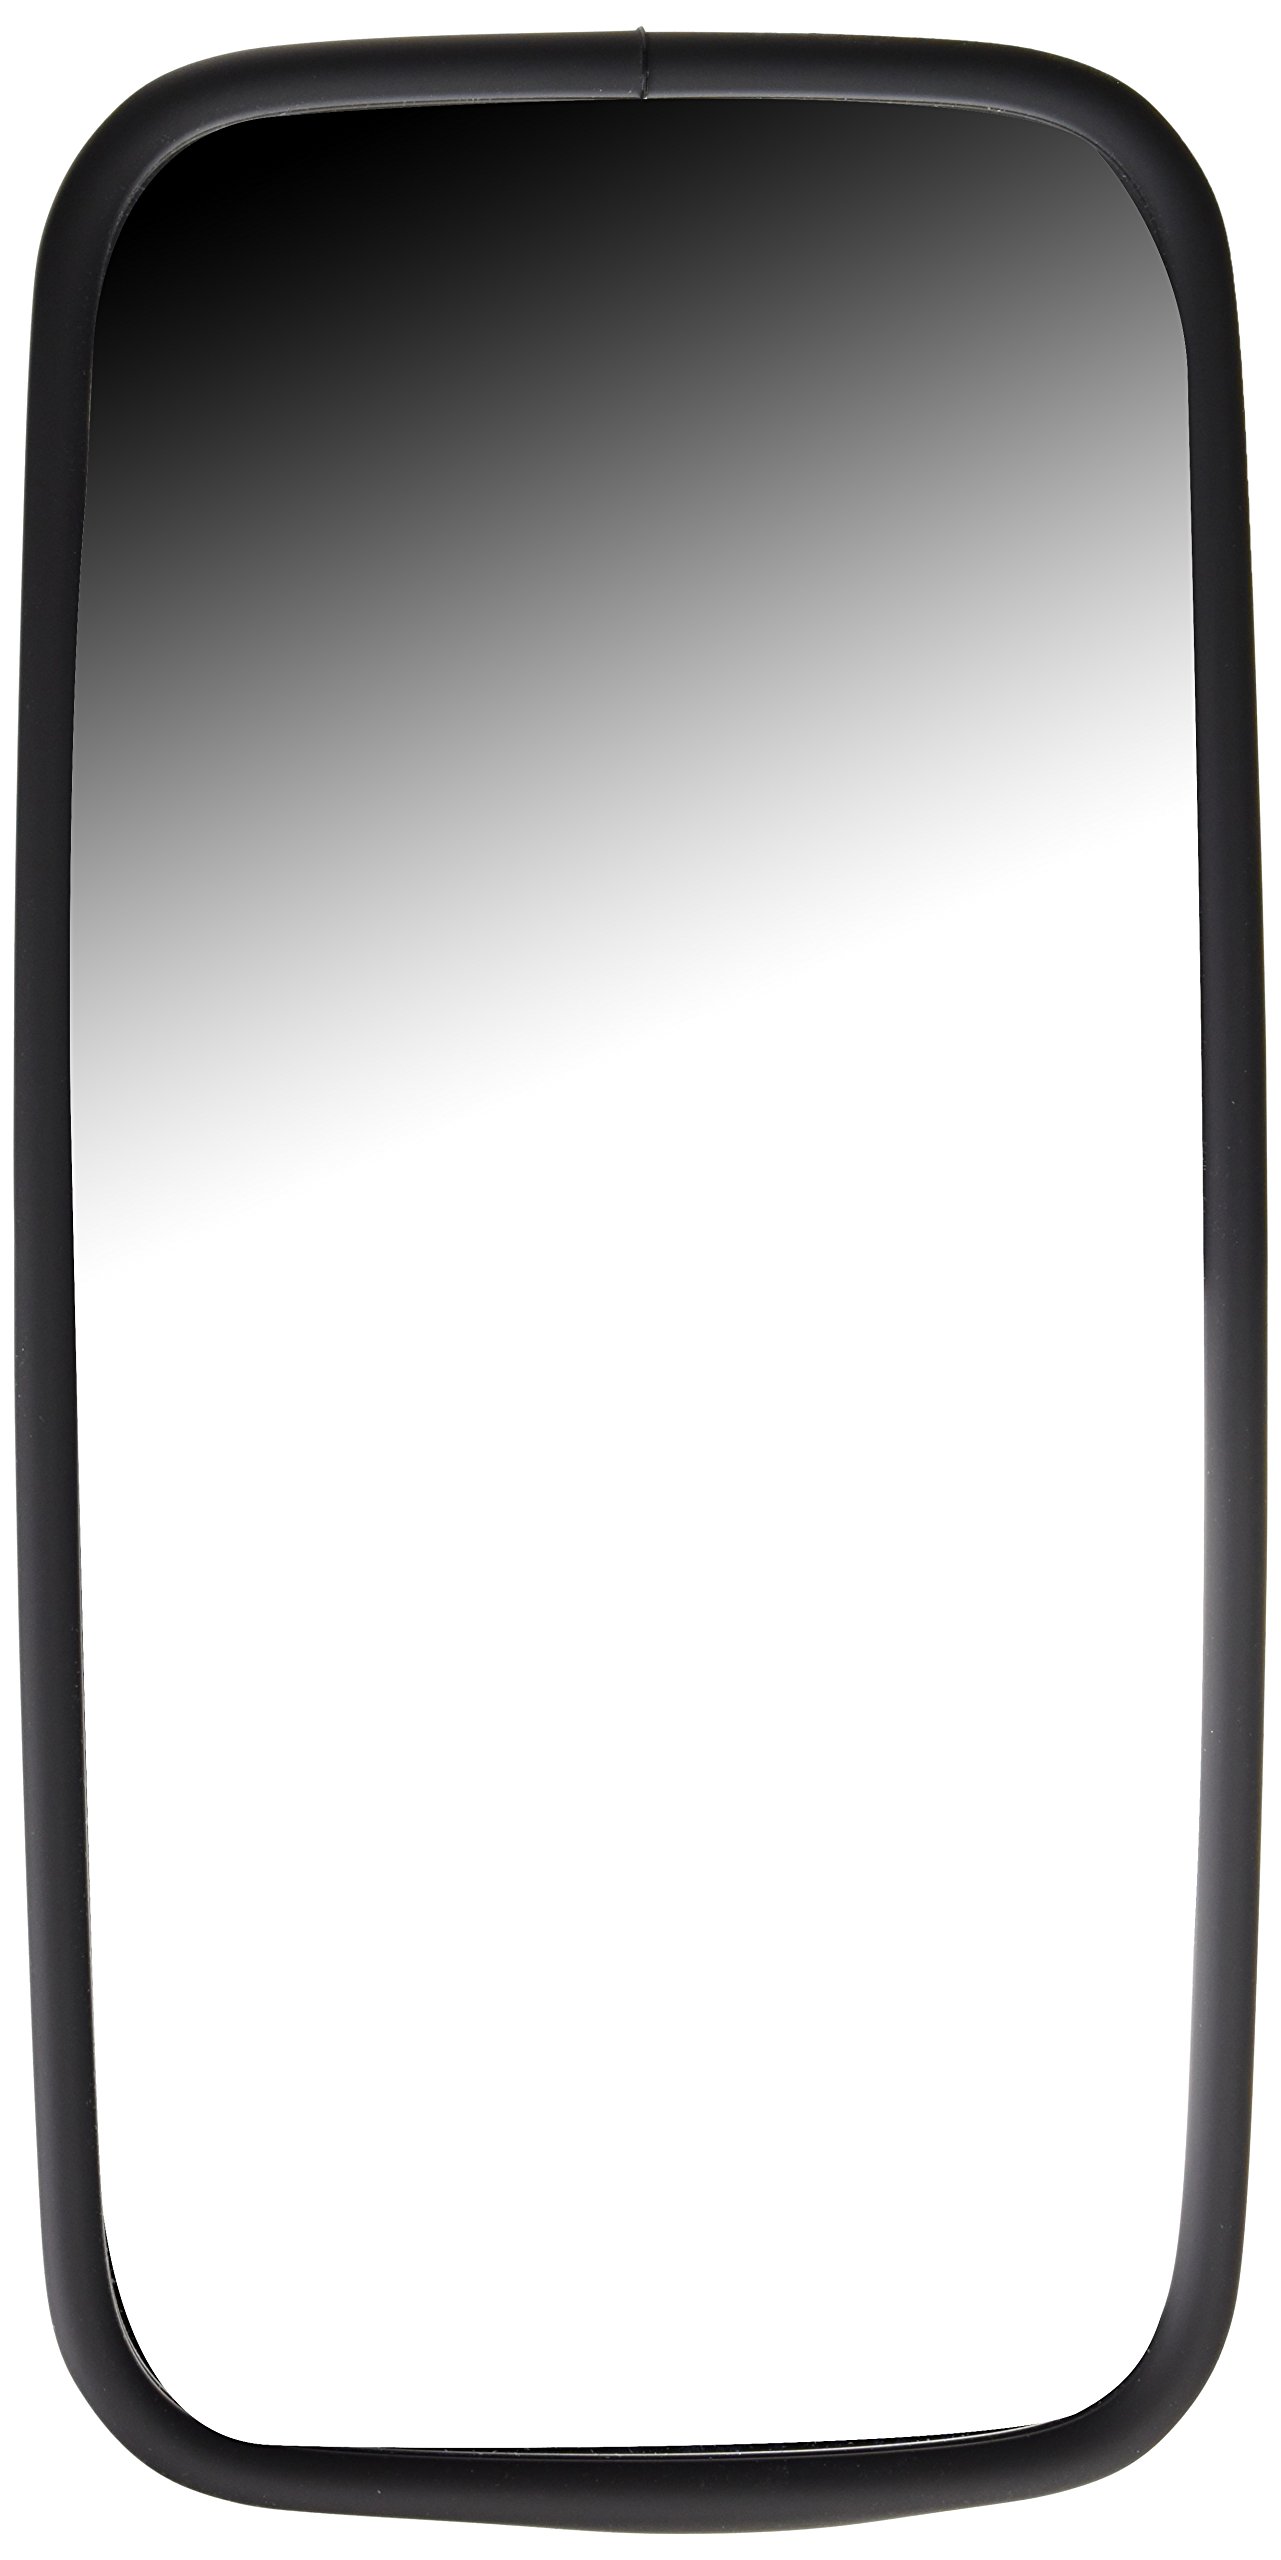 HELLA - Außenspiegel - geklemmt - Kunststoffgehäuse - schwarz - Breite: 187mm - Höhe: 382mm - beidseitig - 8SB 003 290-001 von Hella